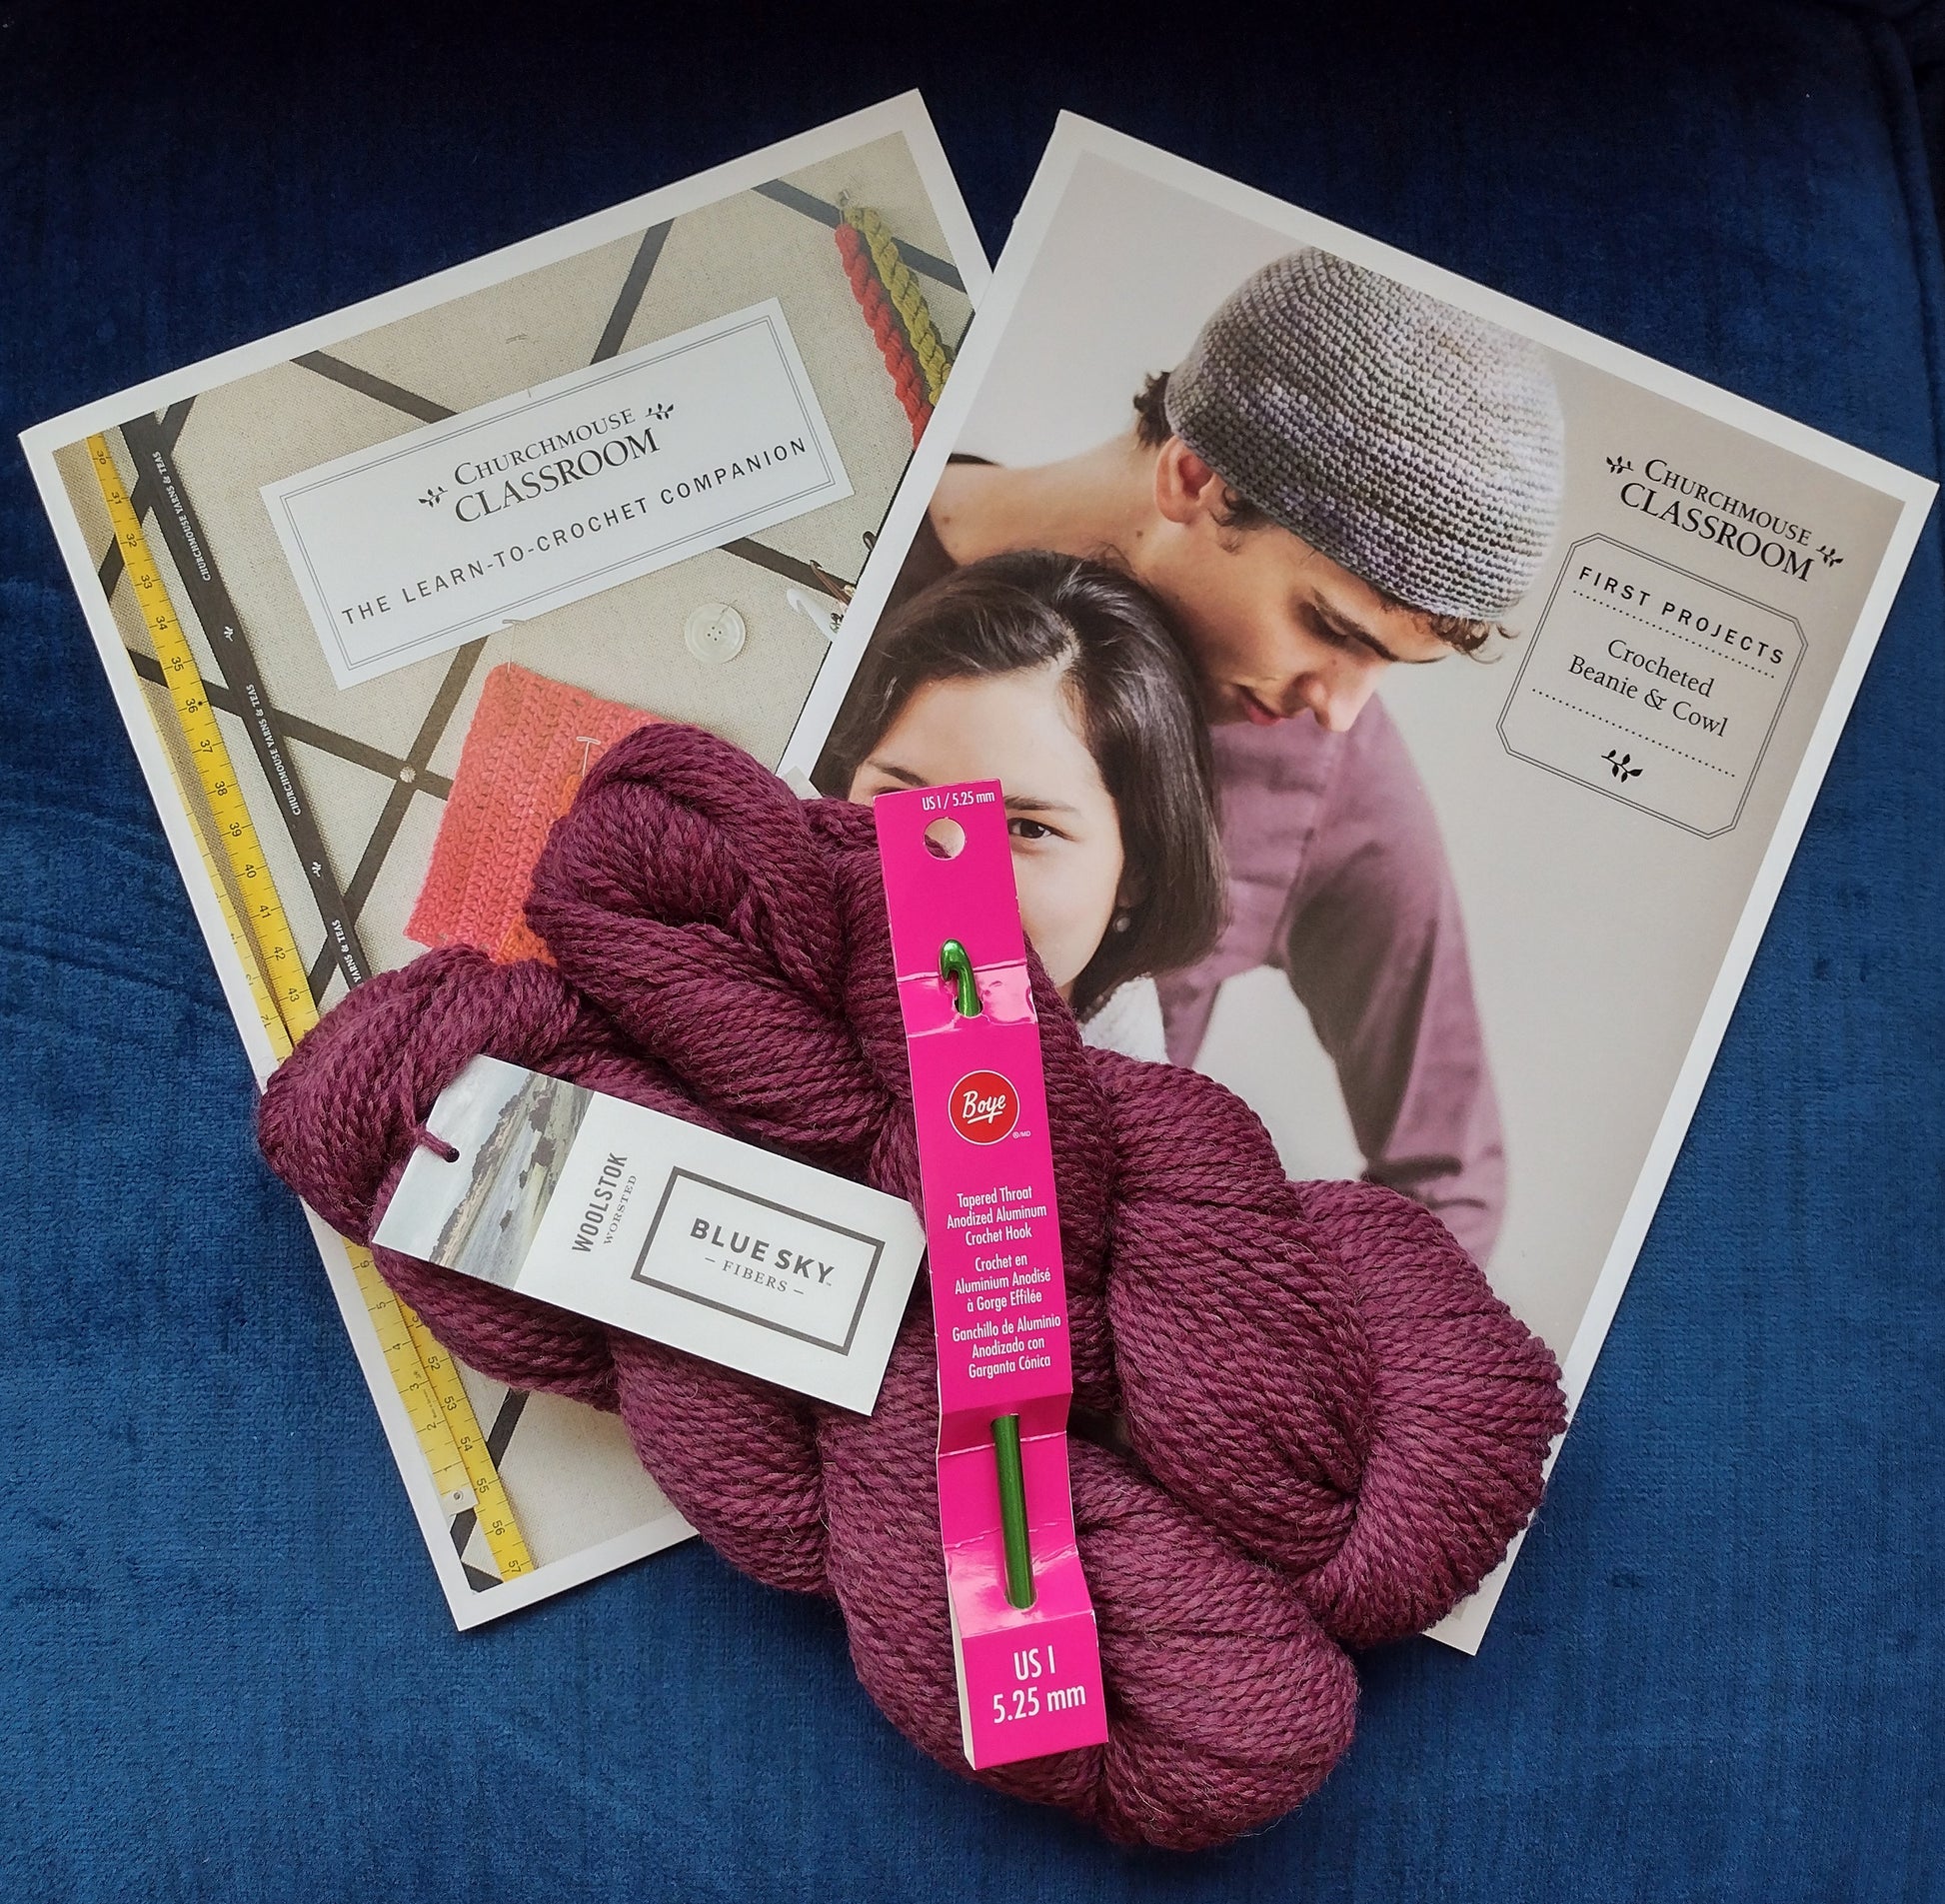 Classroom: The Learn-to-Knit Companion – Churchmouse Yarns & Teas